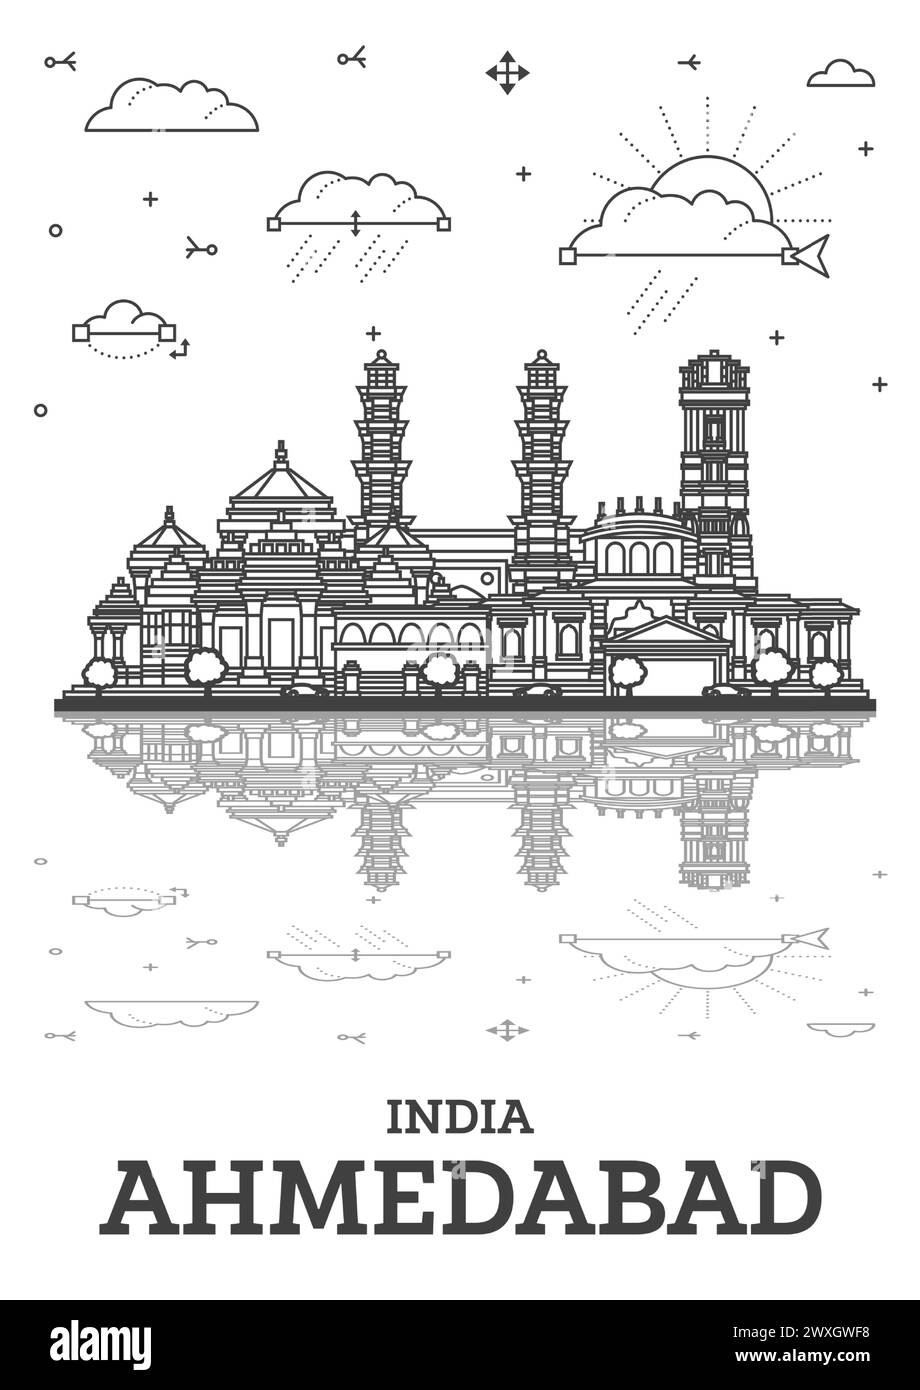 Umreißen Sie die Skyline von Ahmedabad India City mit historischen Gebäuden und Reflektionen, isoliert auf Weiß. Vektordarstellung. Ahmedabad Stadtbild mit Wahrzeichen Stock Vektor